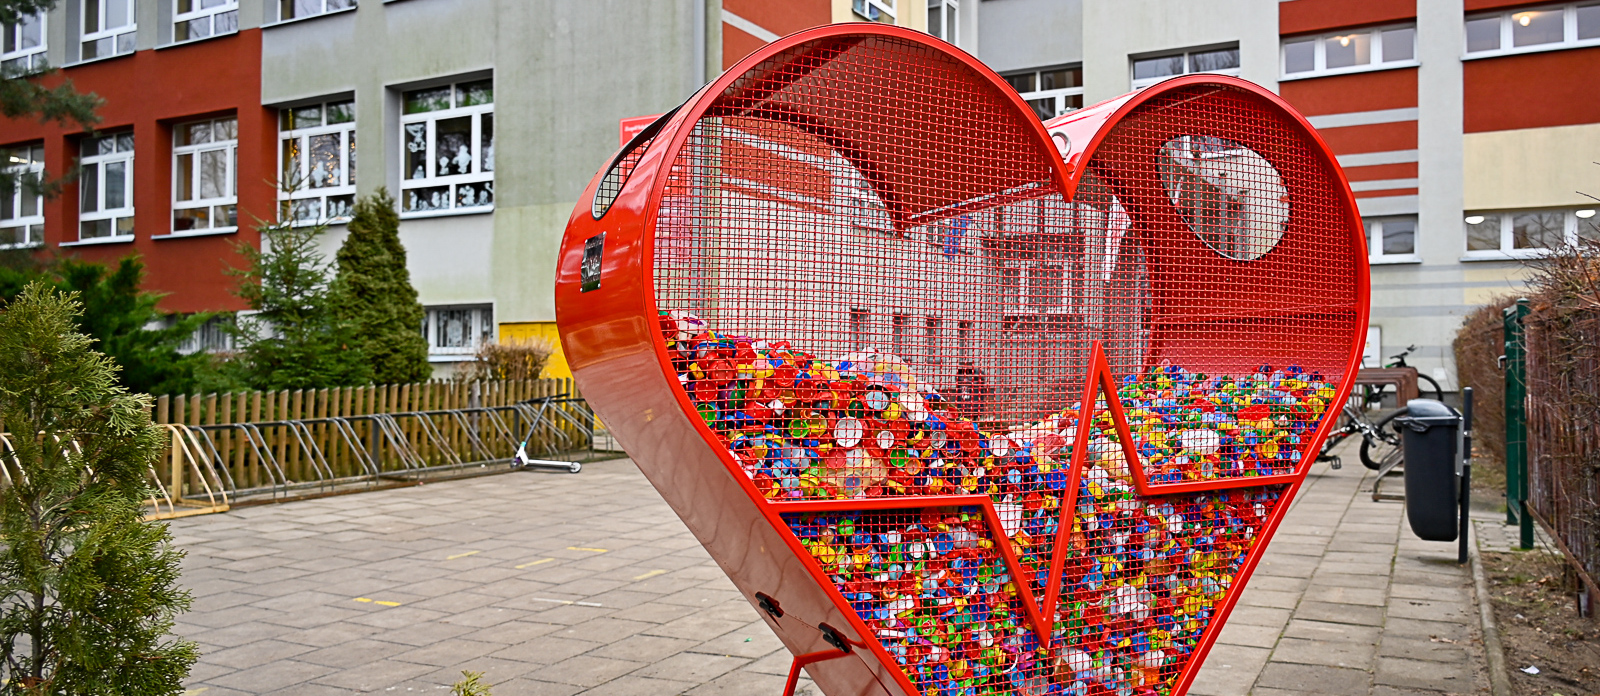 Pojemnik w kształcie serca stojący na placu przed szkołą